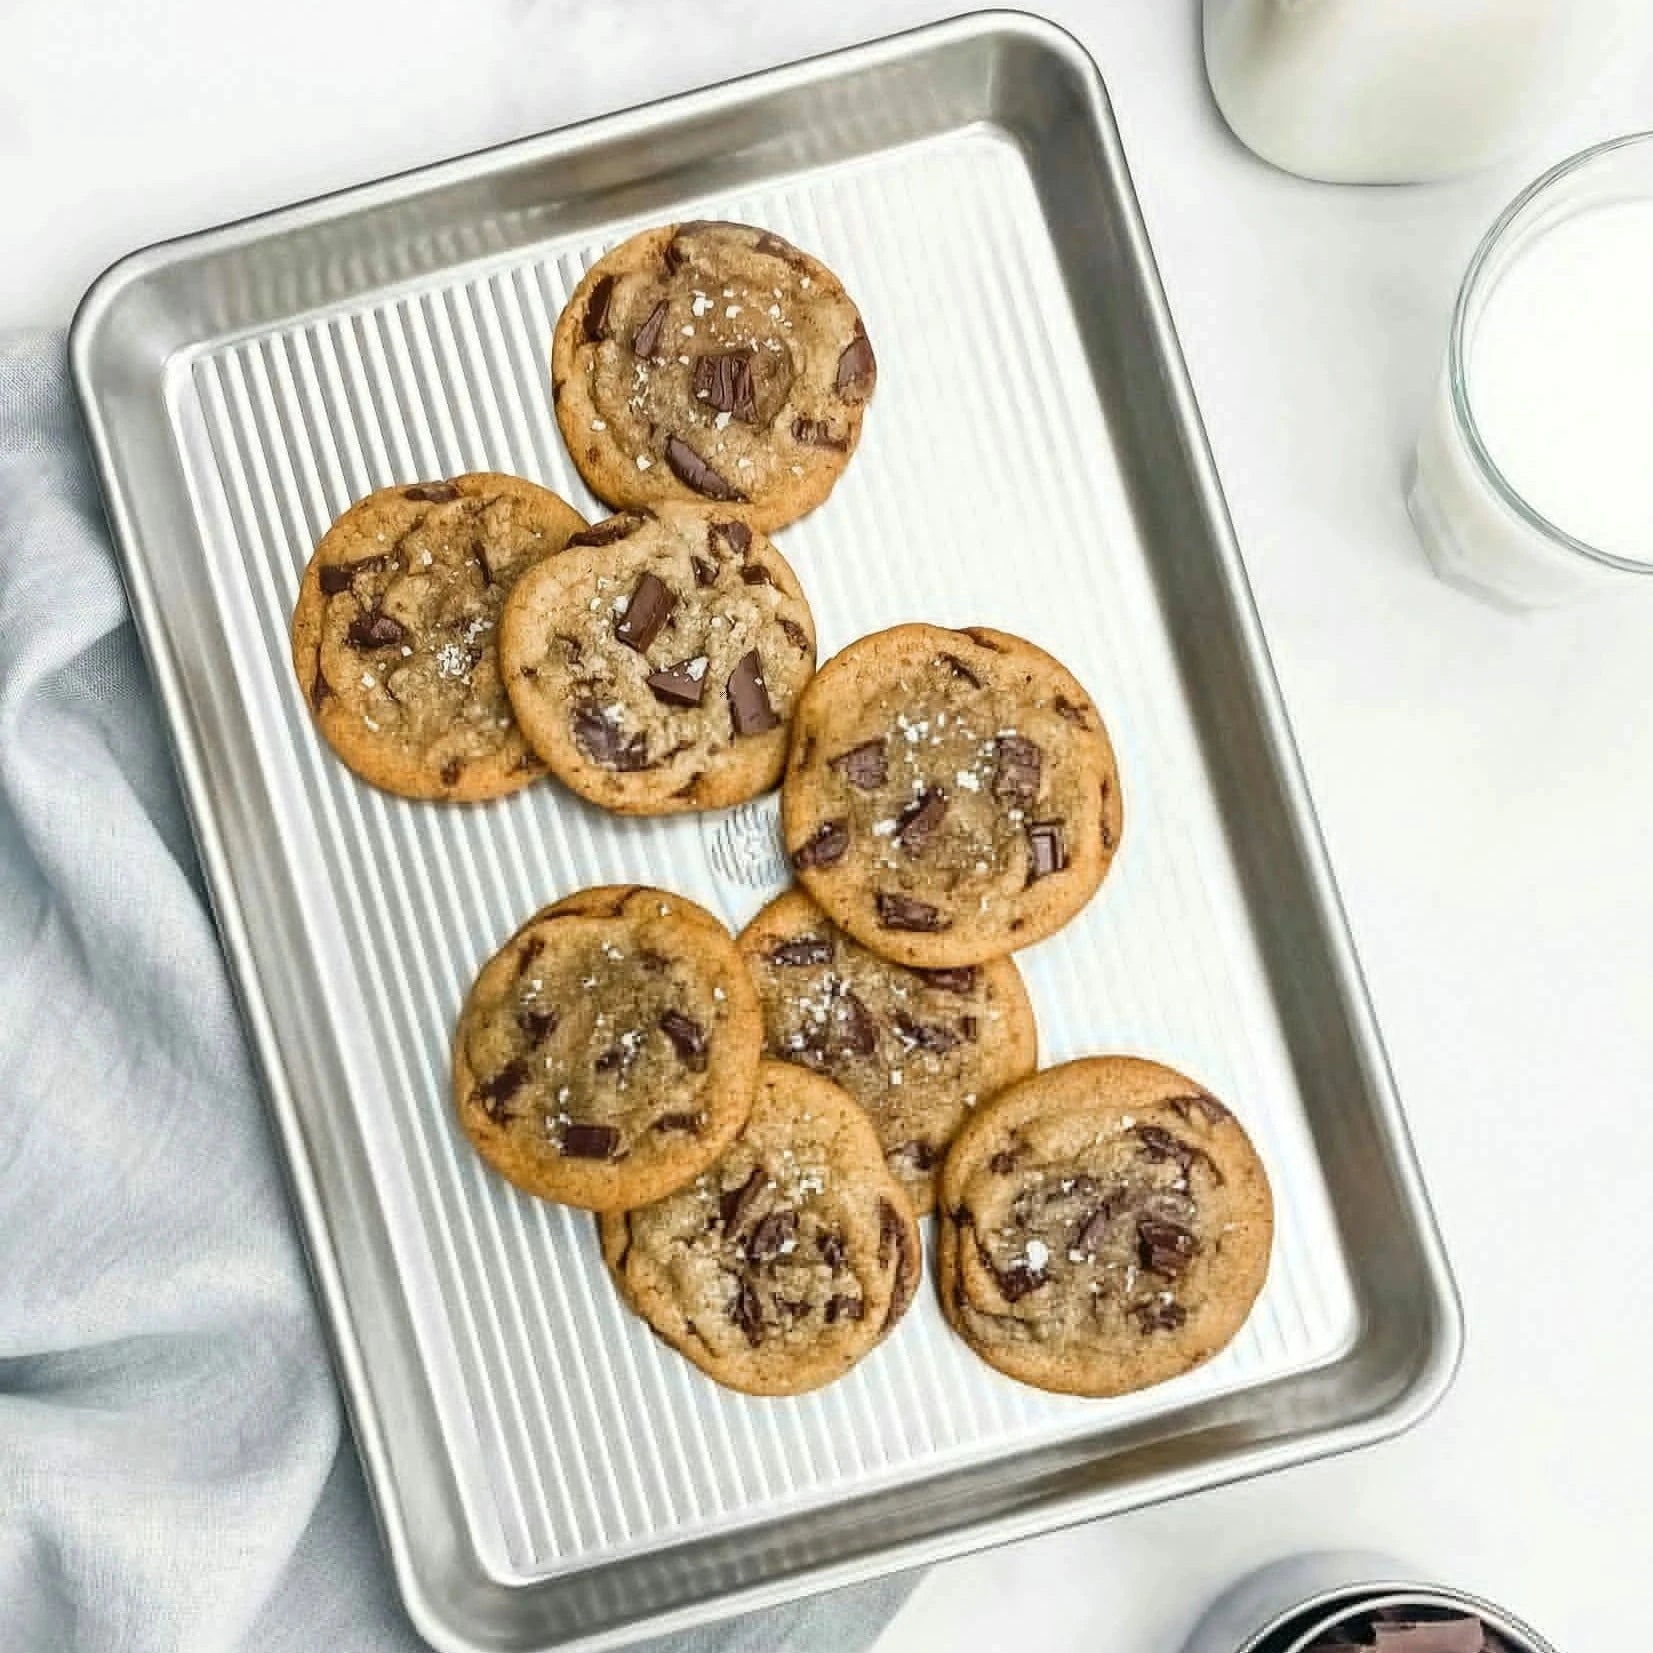 USA Pans quarter sheet pan with cookies